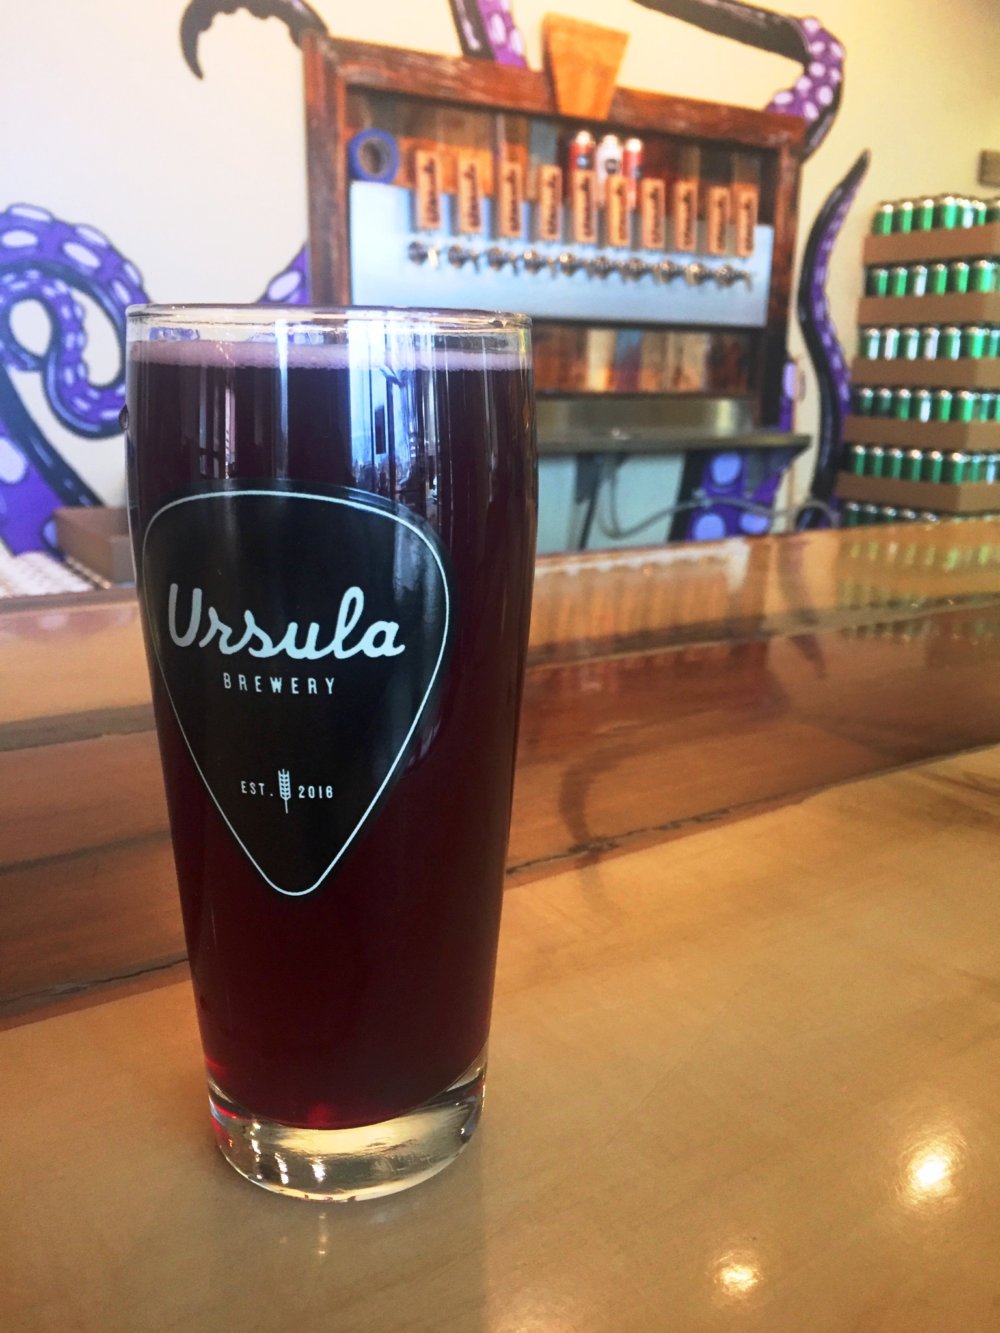 Ursula Brewery